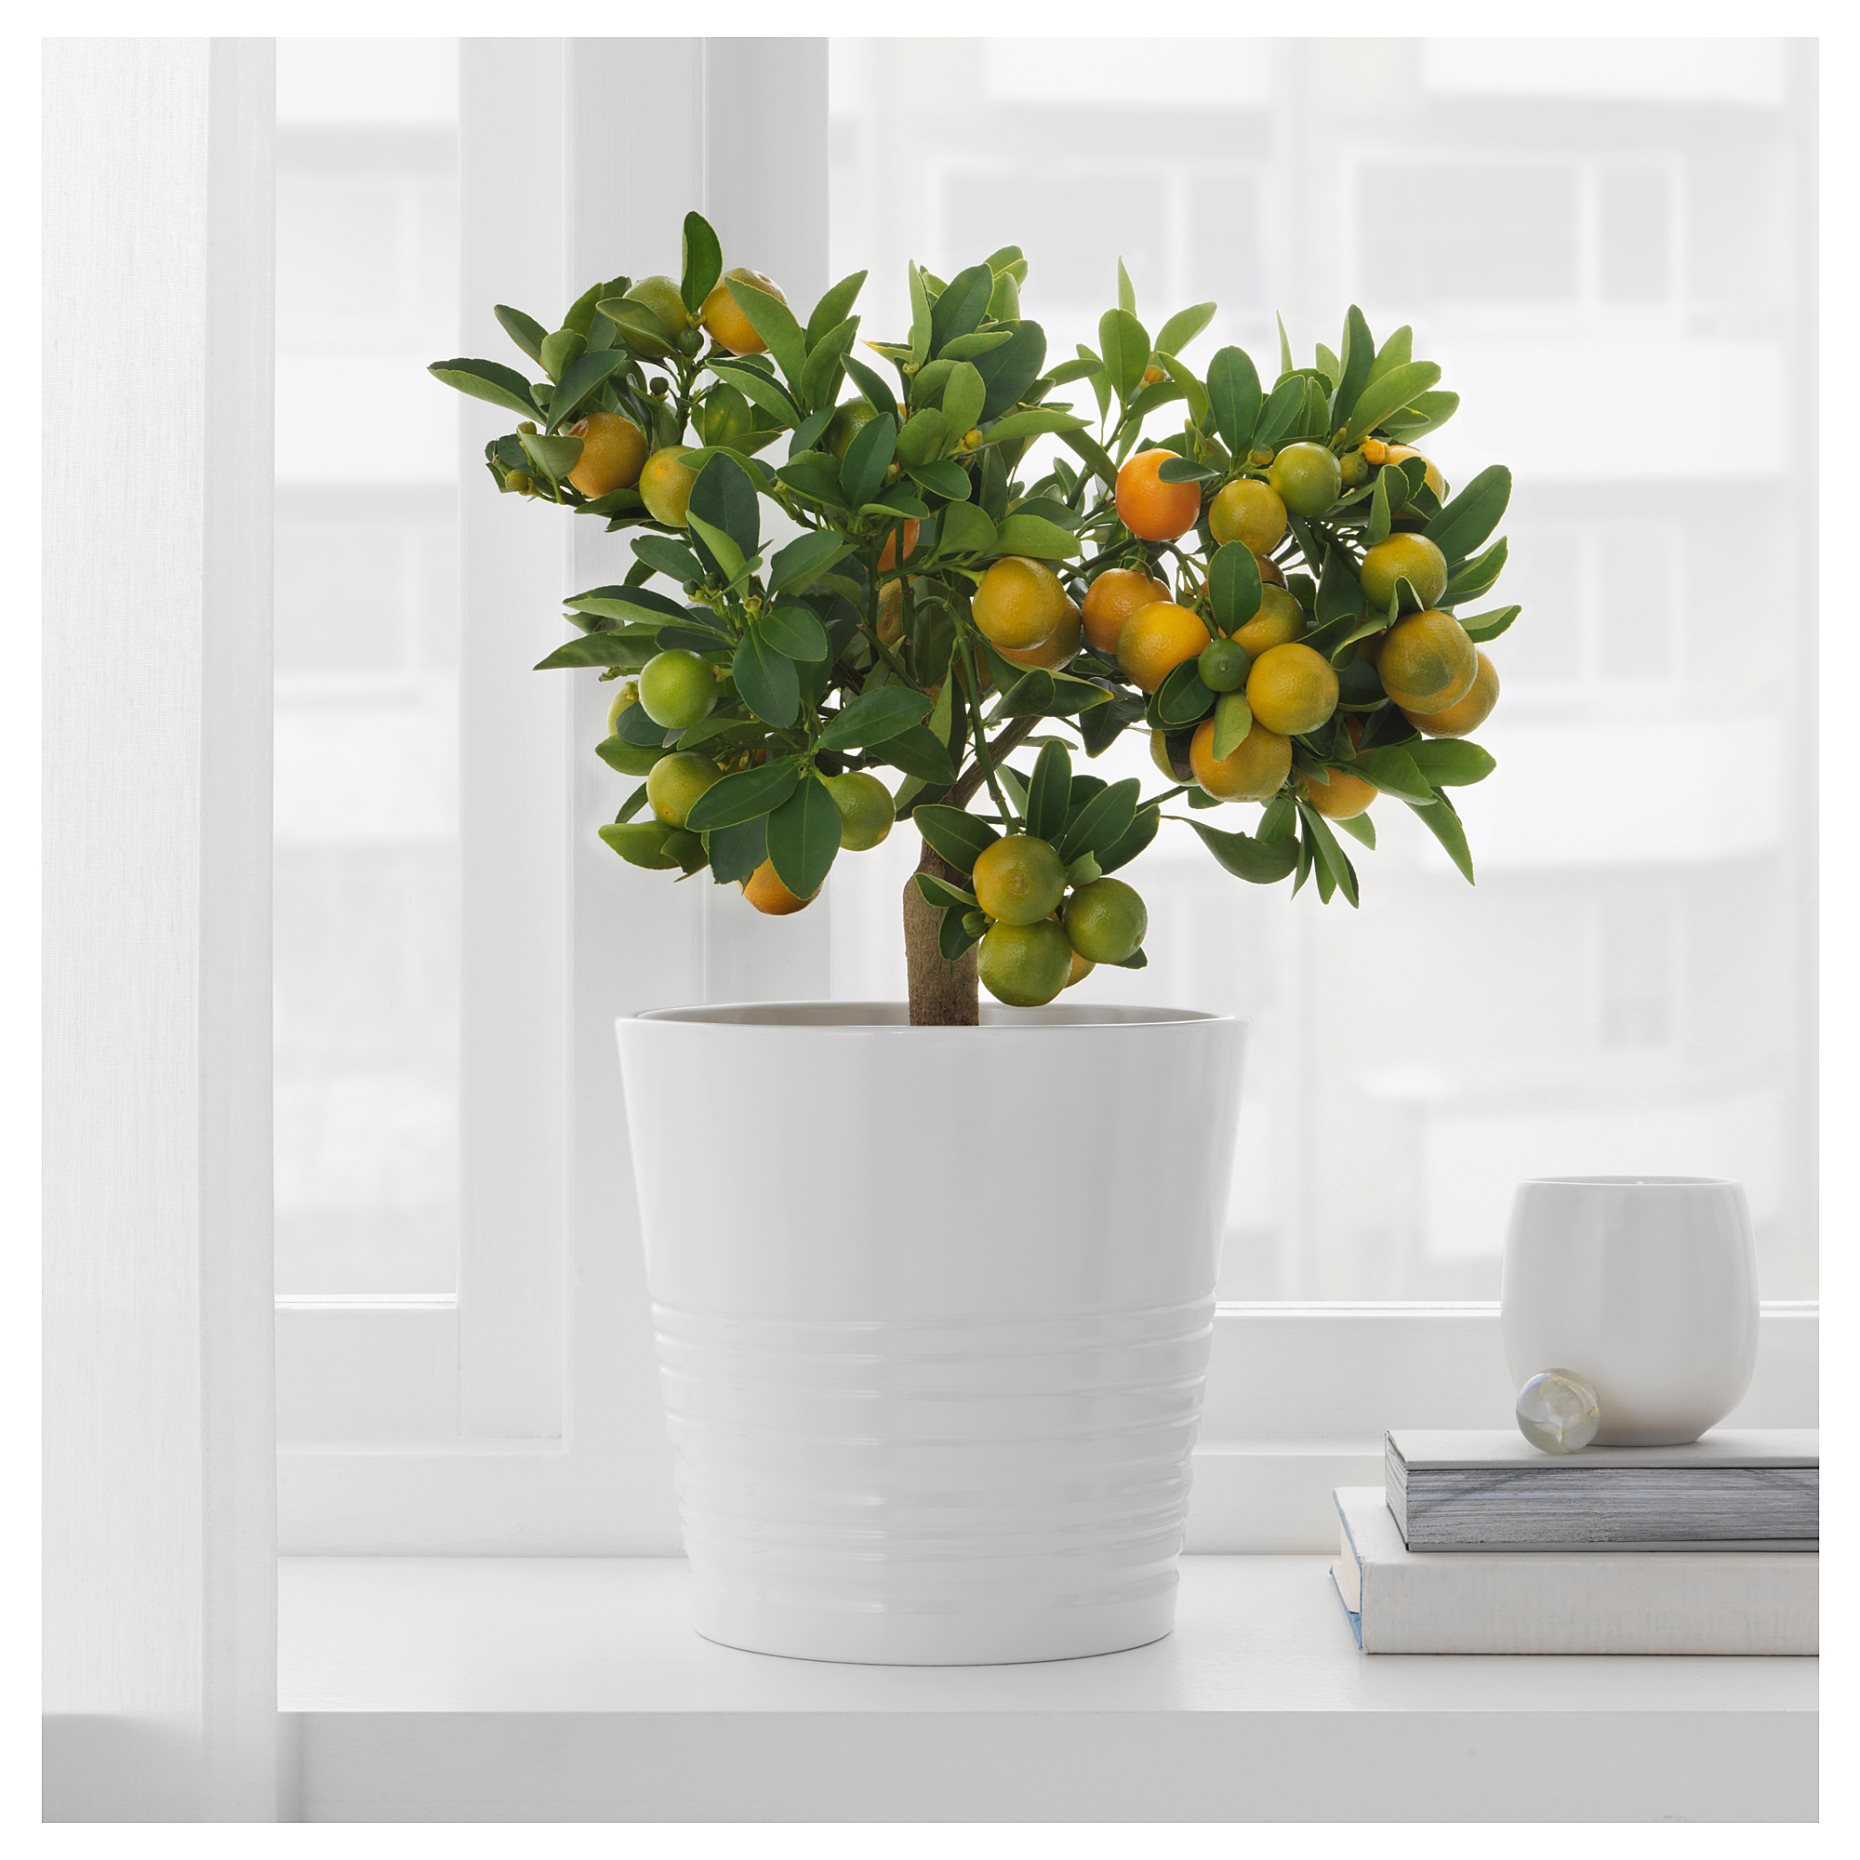 CITRUS, potted plant/Calamondin, 15 cm, 405.746.28